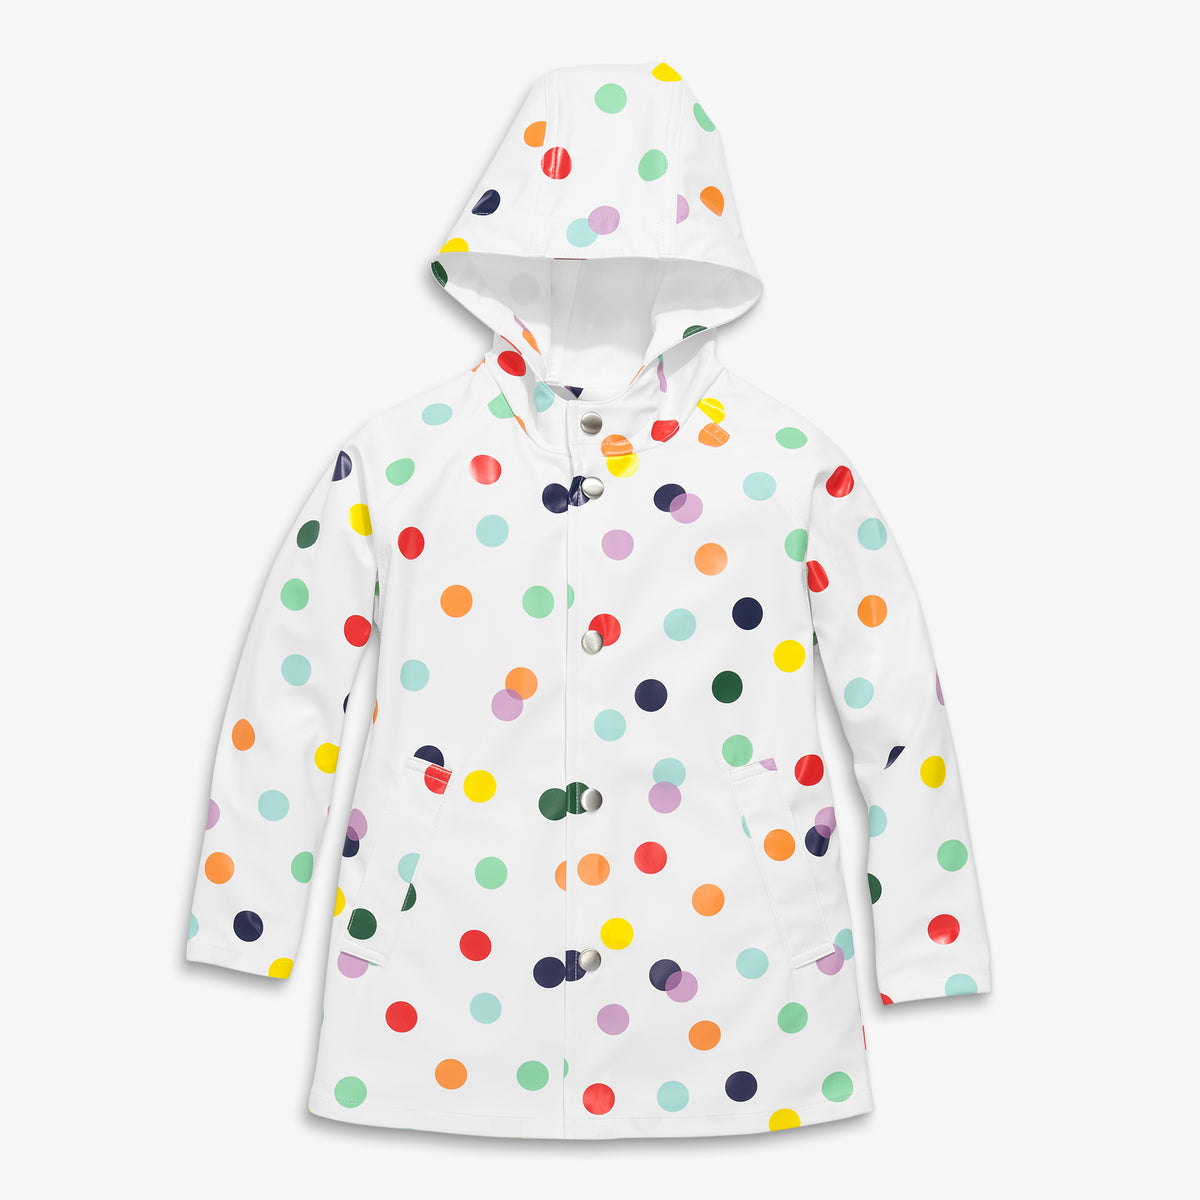 Raincoat in rainbow confetti dot | Primary.com